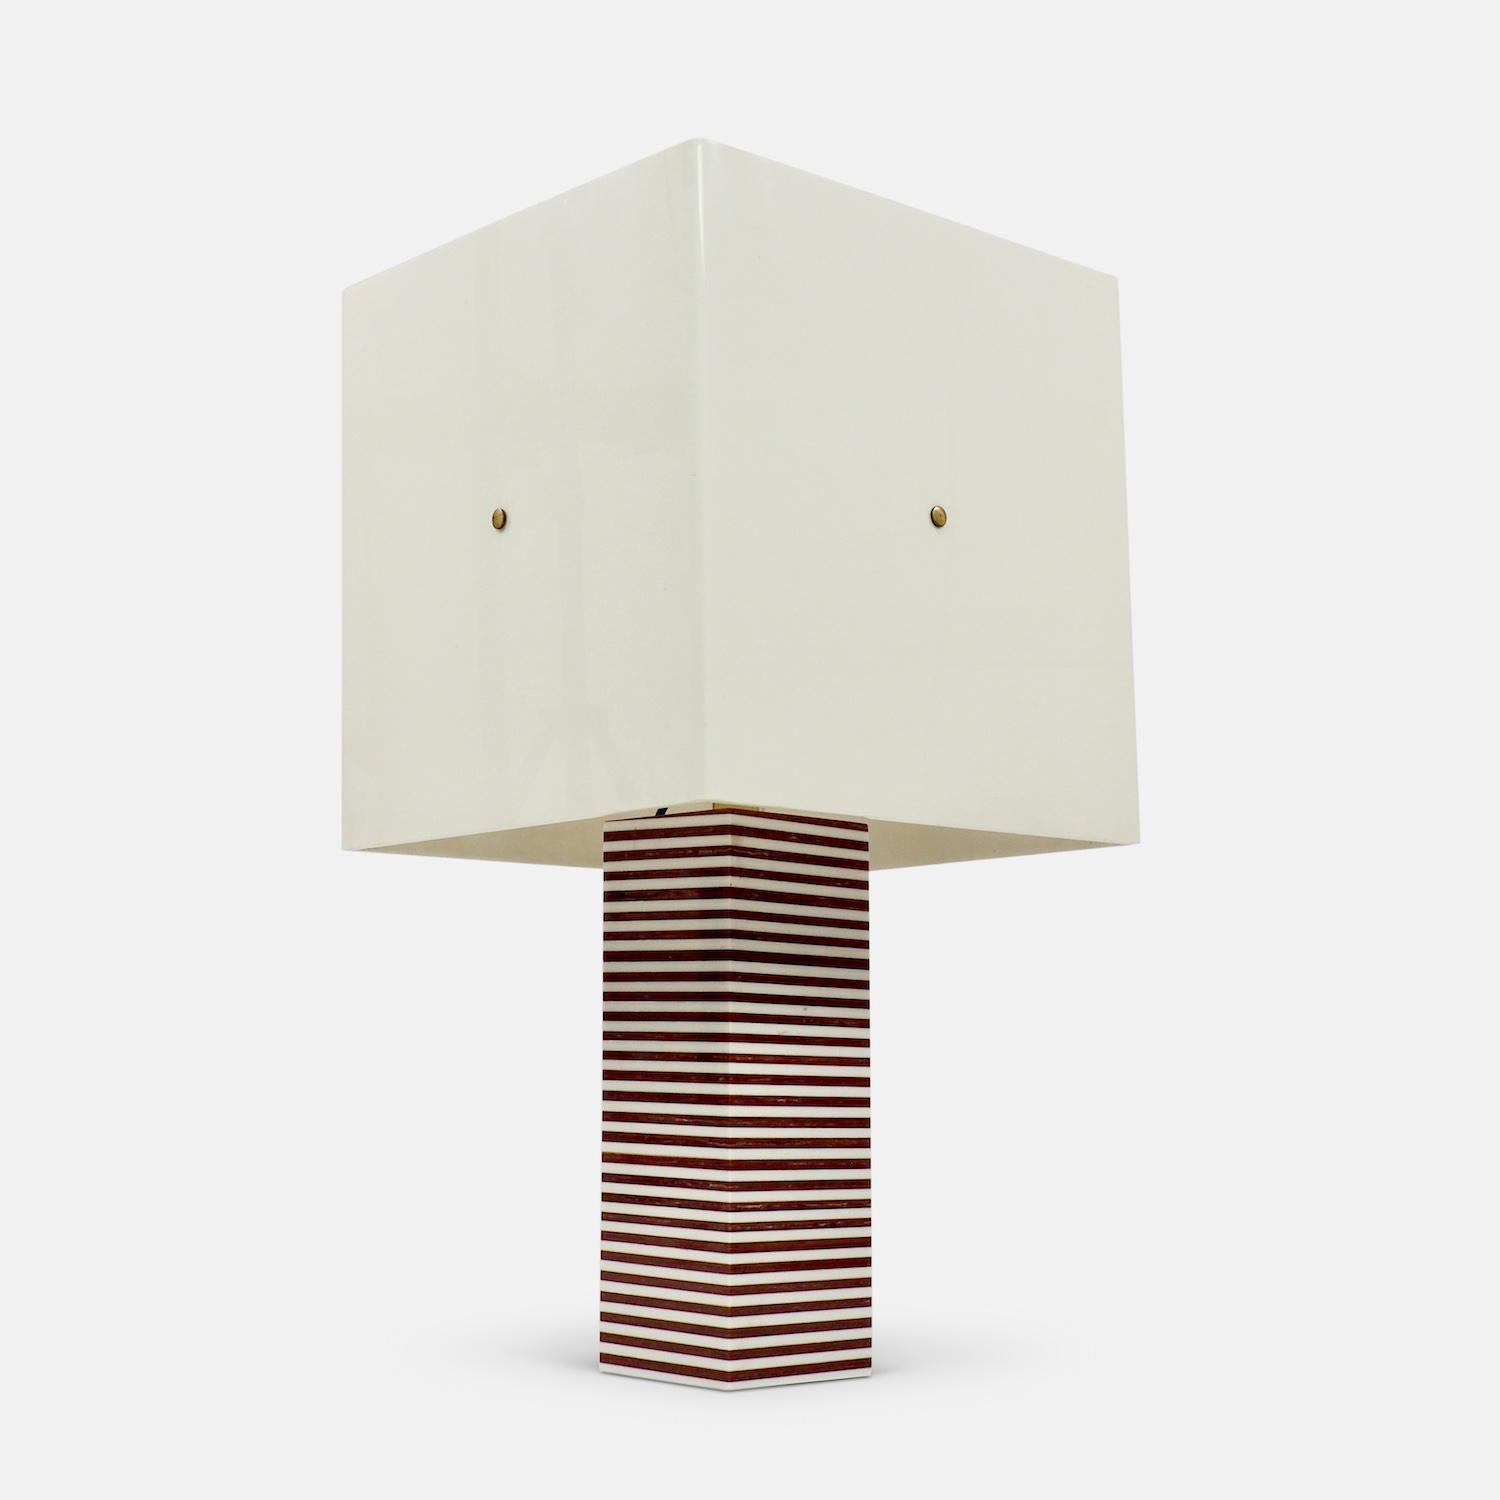 Élégante lampe de table italienne des années 1970 en acrylique rayé, composée de couches marbrées contrastées de forme géométrique, avec abat-jour original en acrylique blanc monté sur laiton, dans le style de Romeo Rega. Colonne rectangulaire en